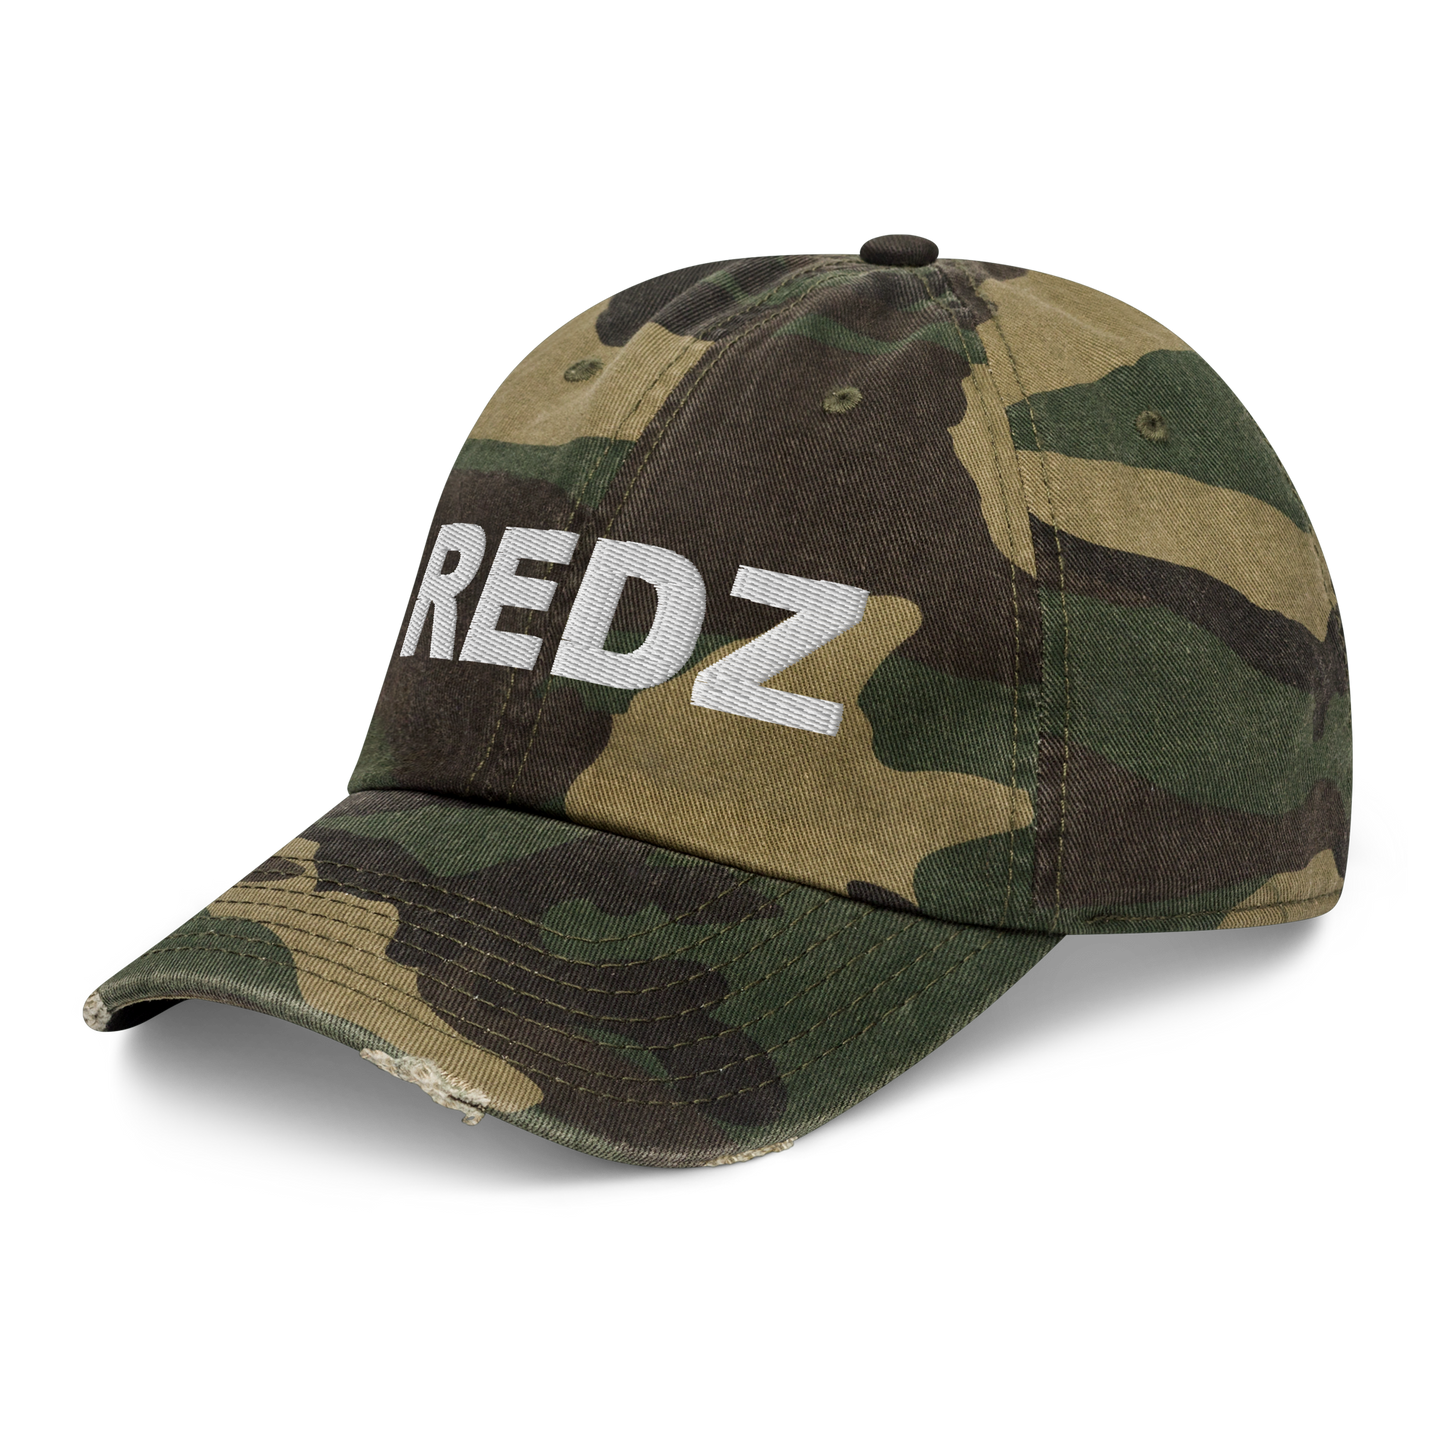 Redz Distressed Dad Hat